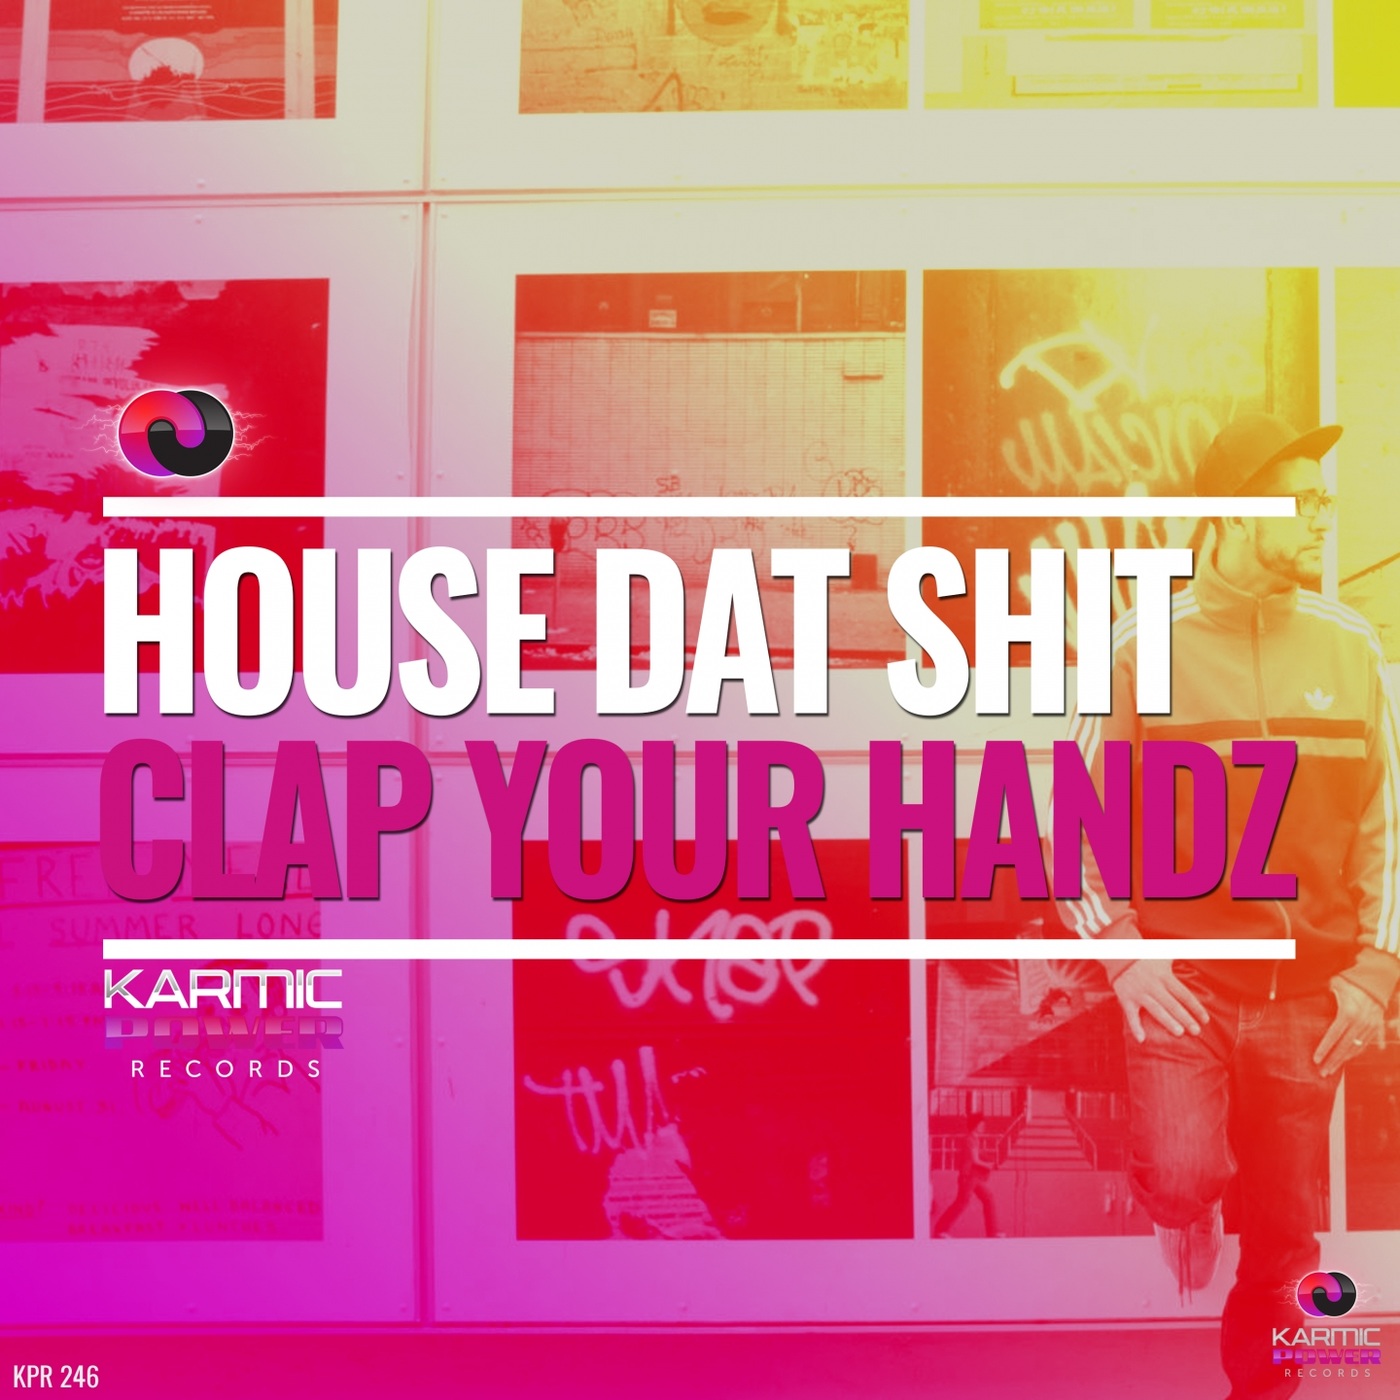 House Dat Shit - Clap Your Handz / Karmic Power Records